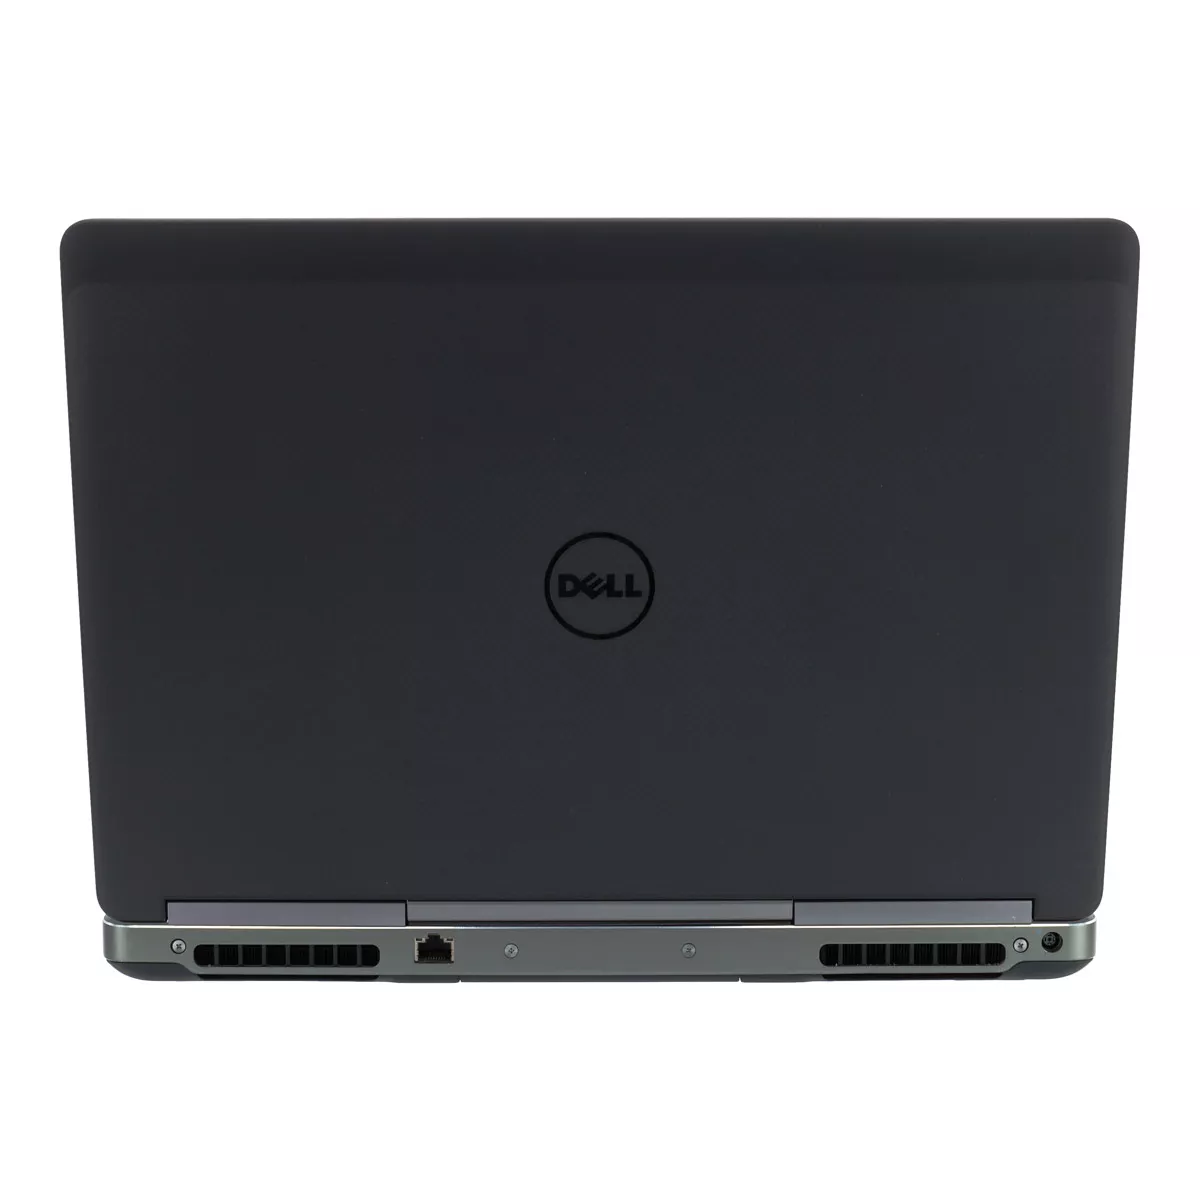 Dell Precision 7710 Core i7 6820HQ nVidia Quadro M3000M Full-HD 500 GB SSD Webcam A+